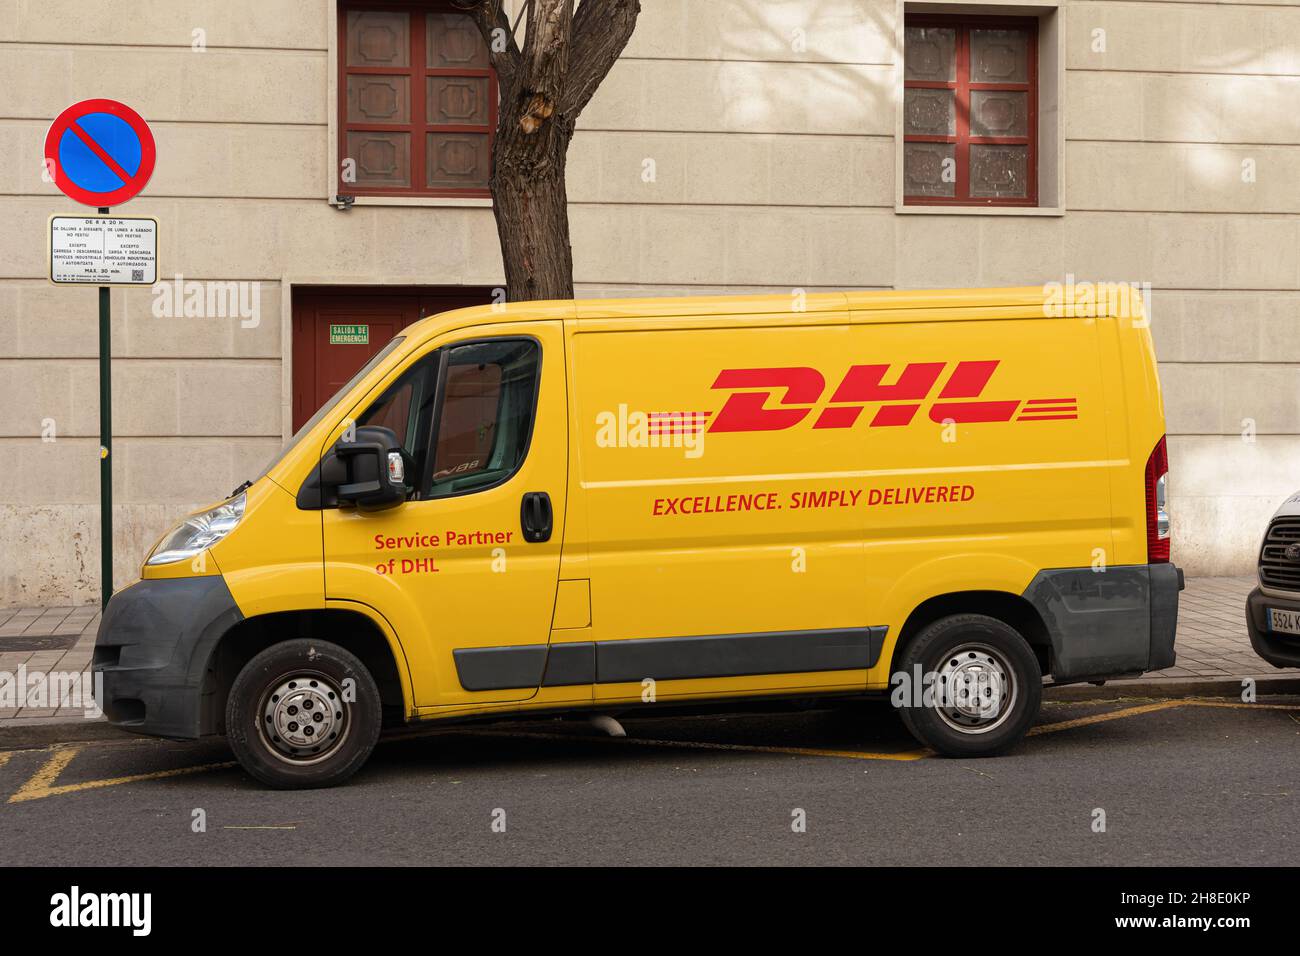 VALENCE, ESPAGNE - 29 NOVEMBRE 2021 : DHL est un service international de messagerie, de livraison de colis et de courrier express Banque D'Images